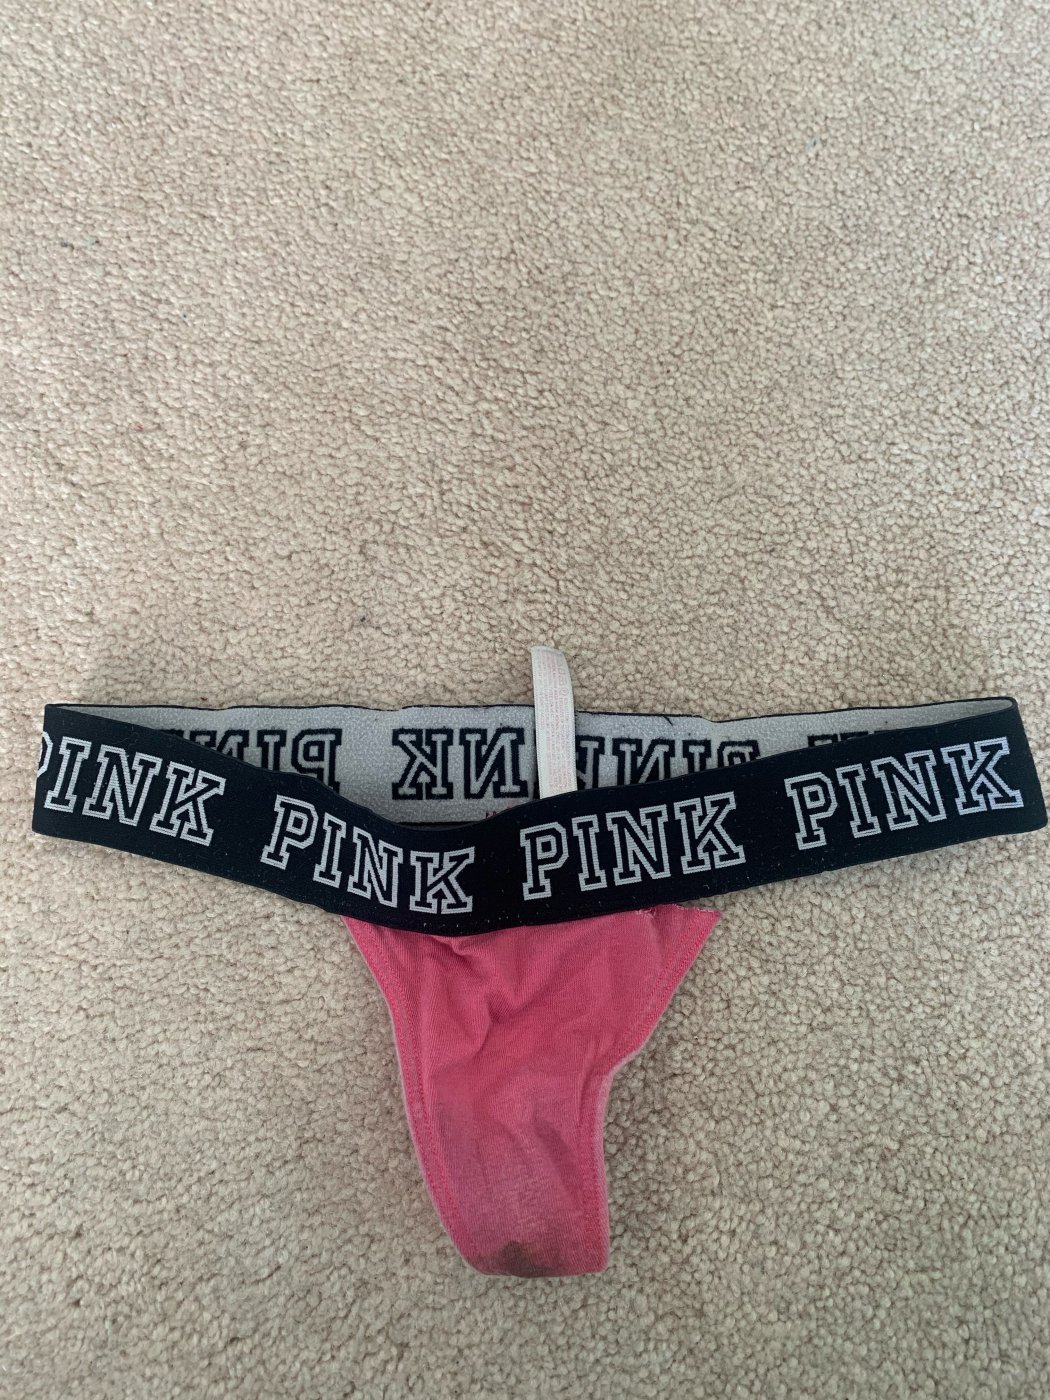 Very dirty pink panties